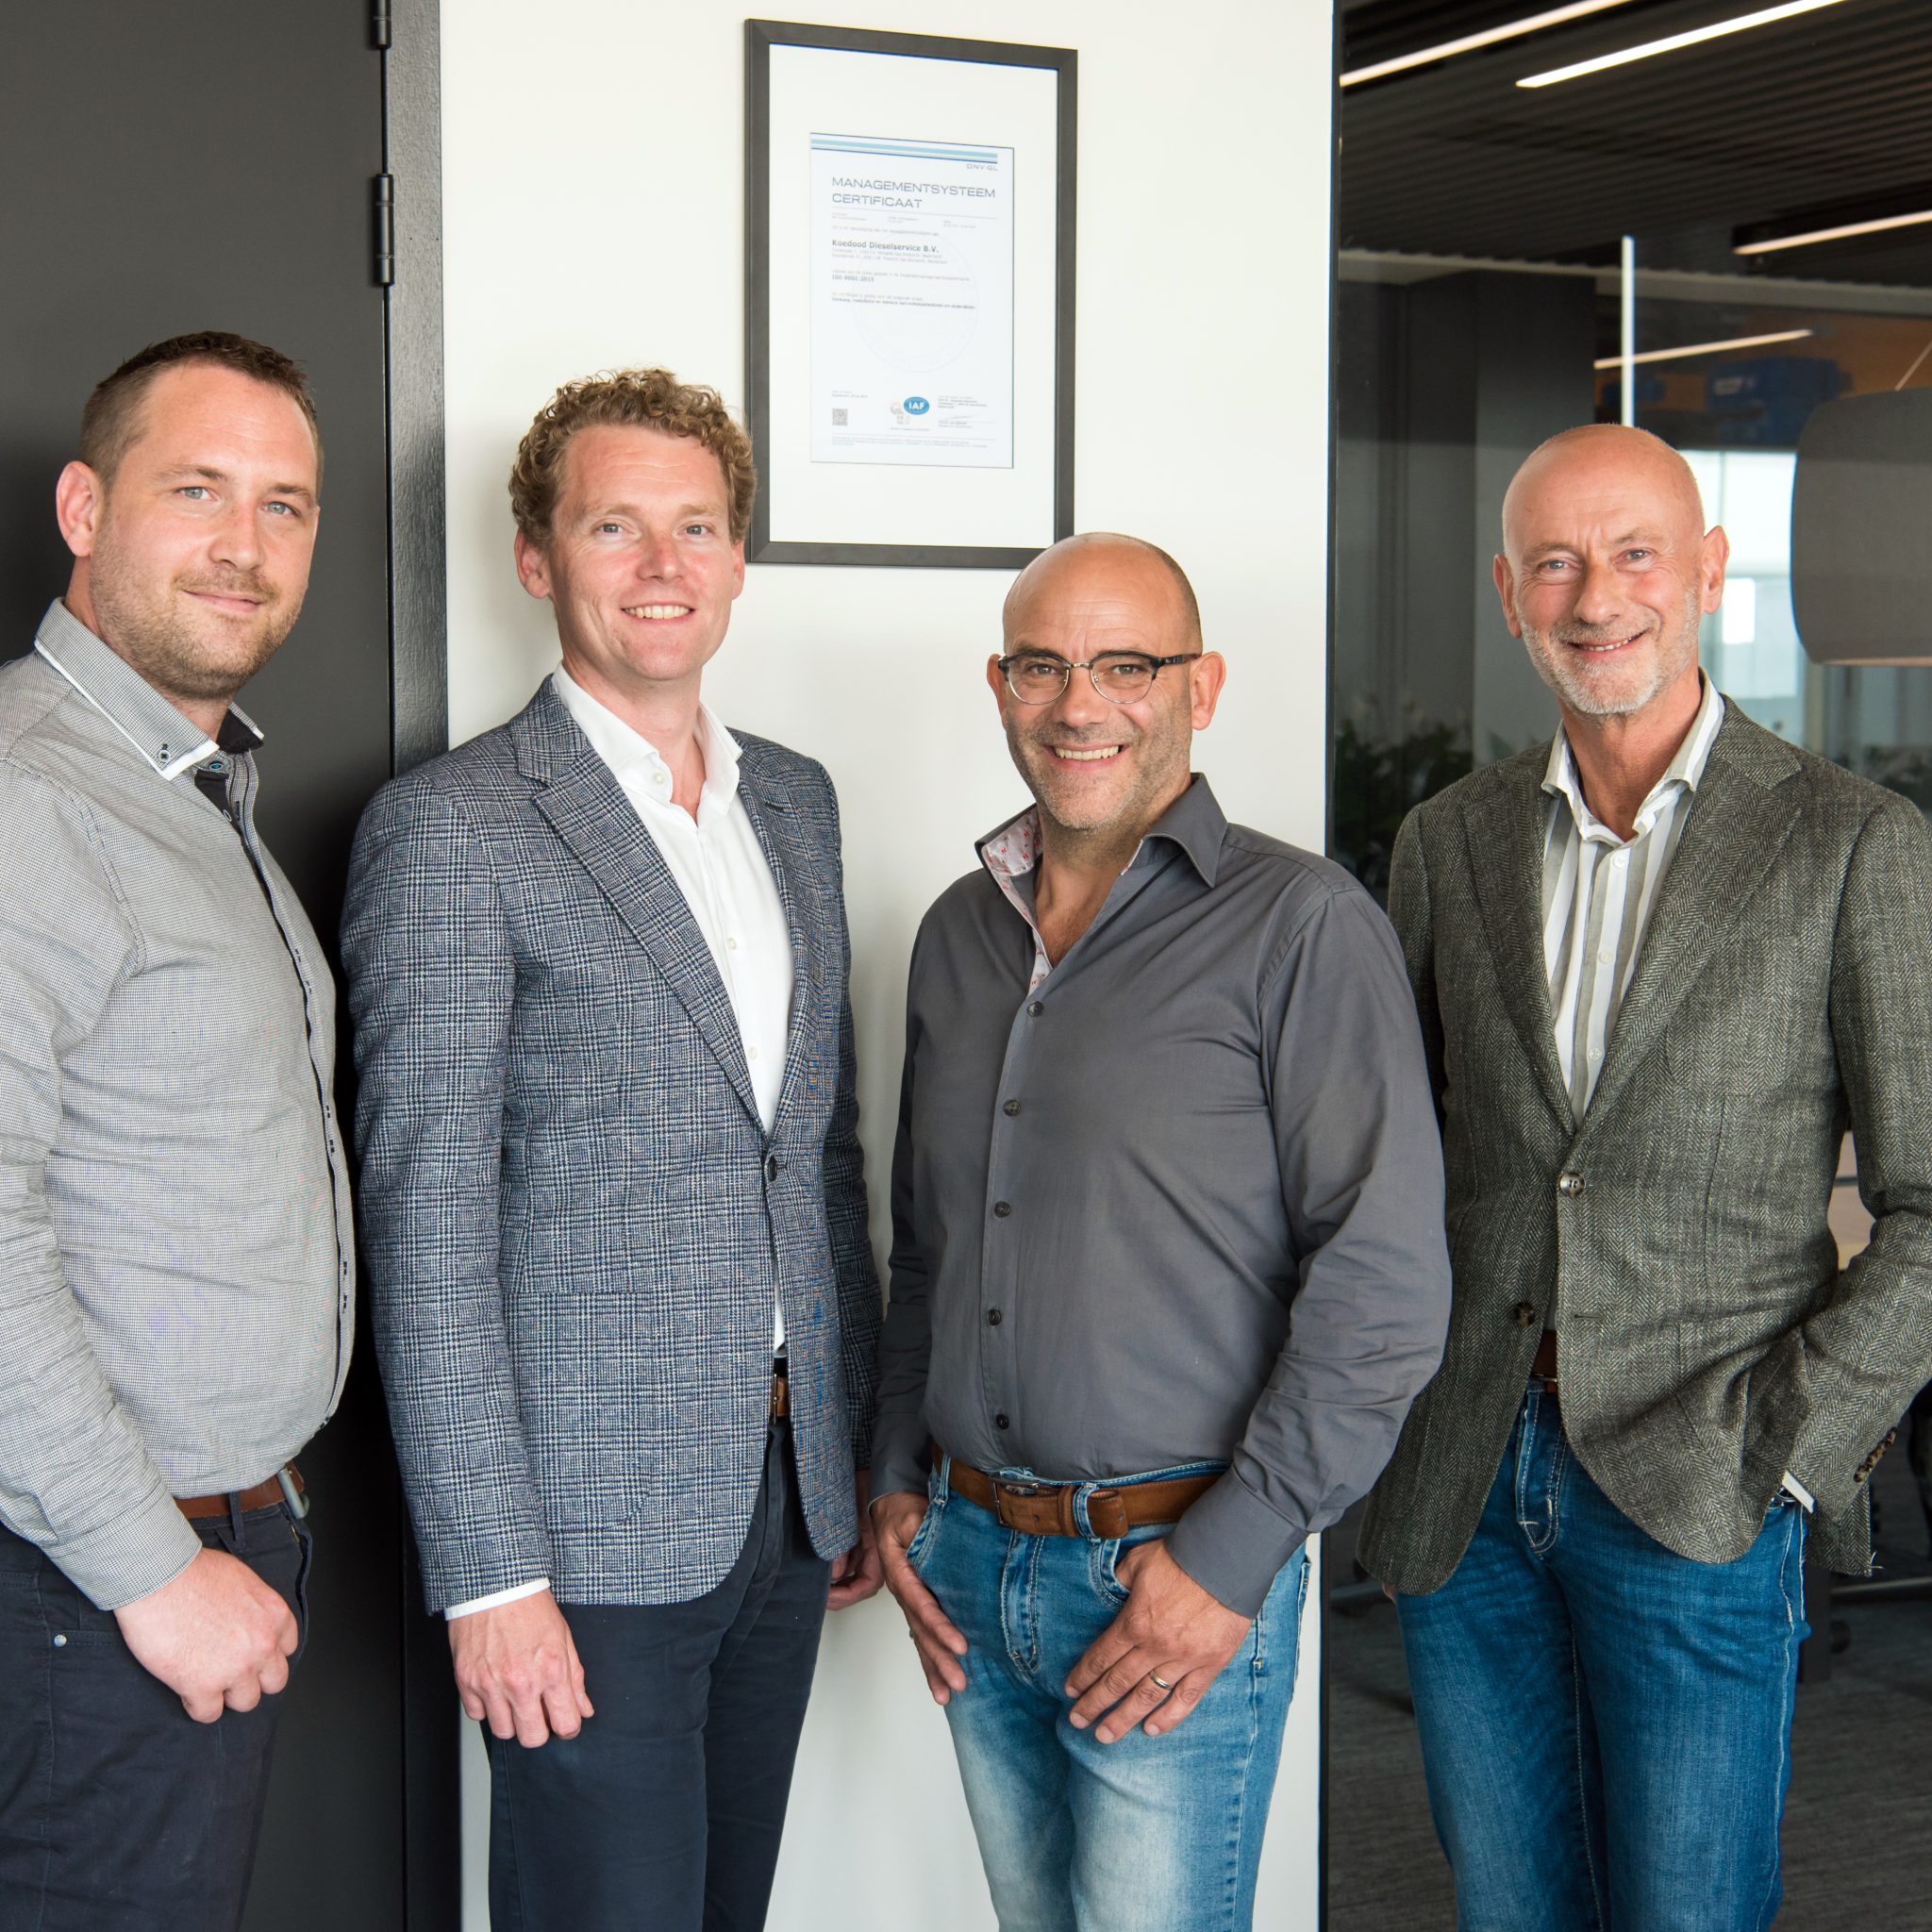 Op de foto van links naar rechts: Sander Roosjen, verantwoordelijk voor ISO-certificering bij Koedood Dieselservice, met de directieleden Peter Snijders, Bert Koedood en Arie Koedood. (Foto Chantal de Visser / Tal Fotografie)